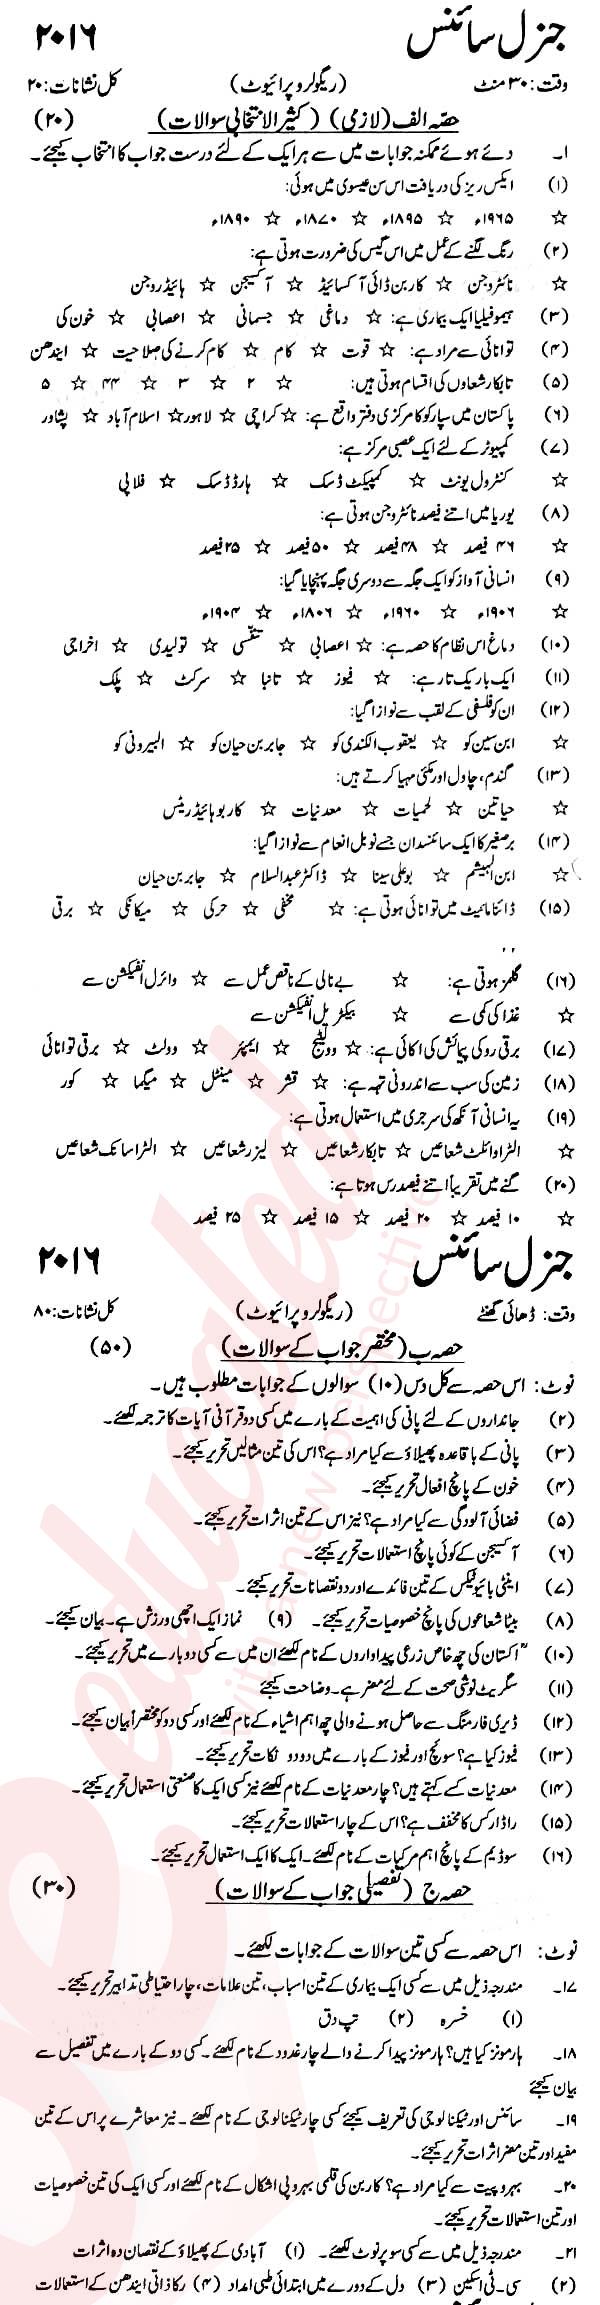 General Science 9th Urdu Medium Past Paper Group 1 KPBTE 2016